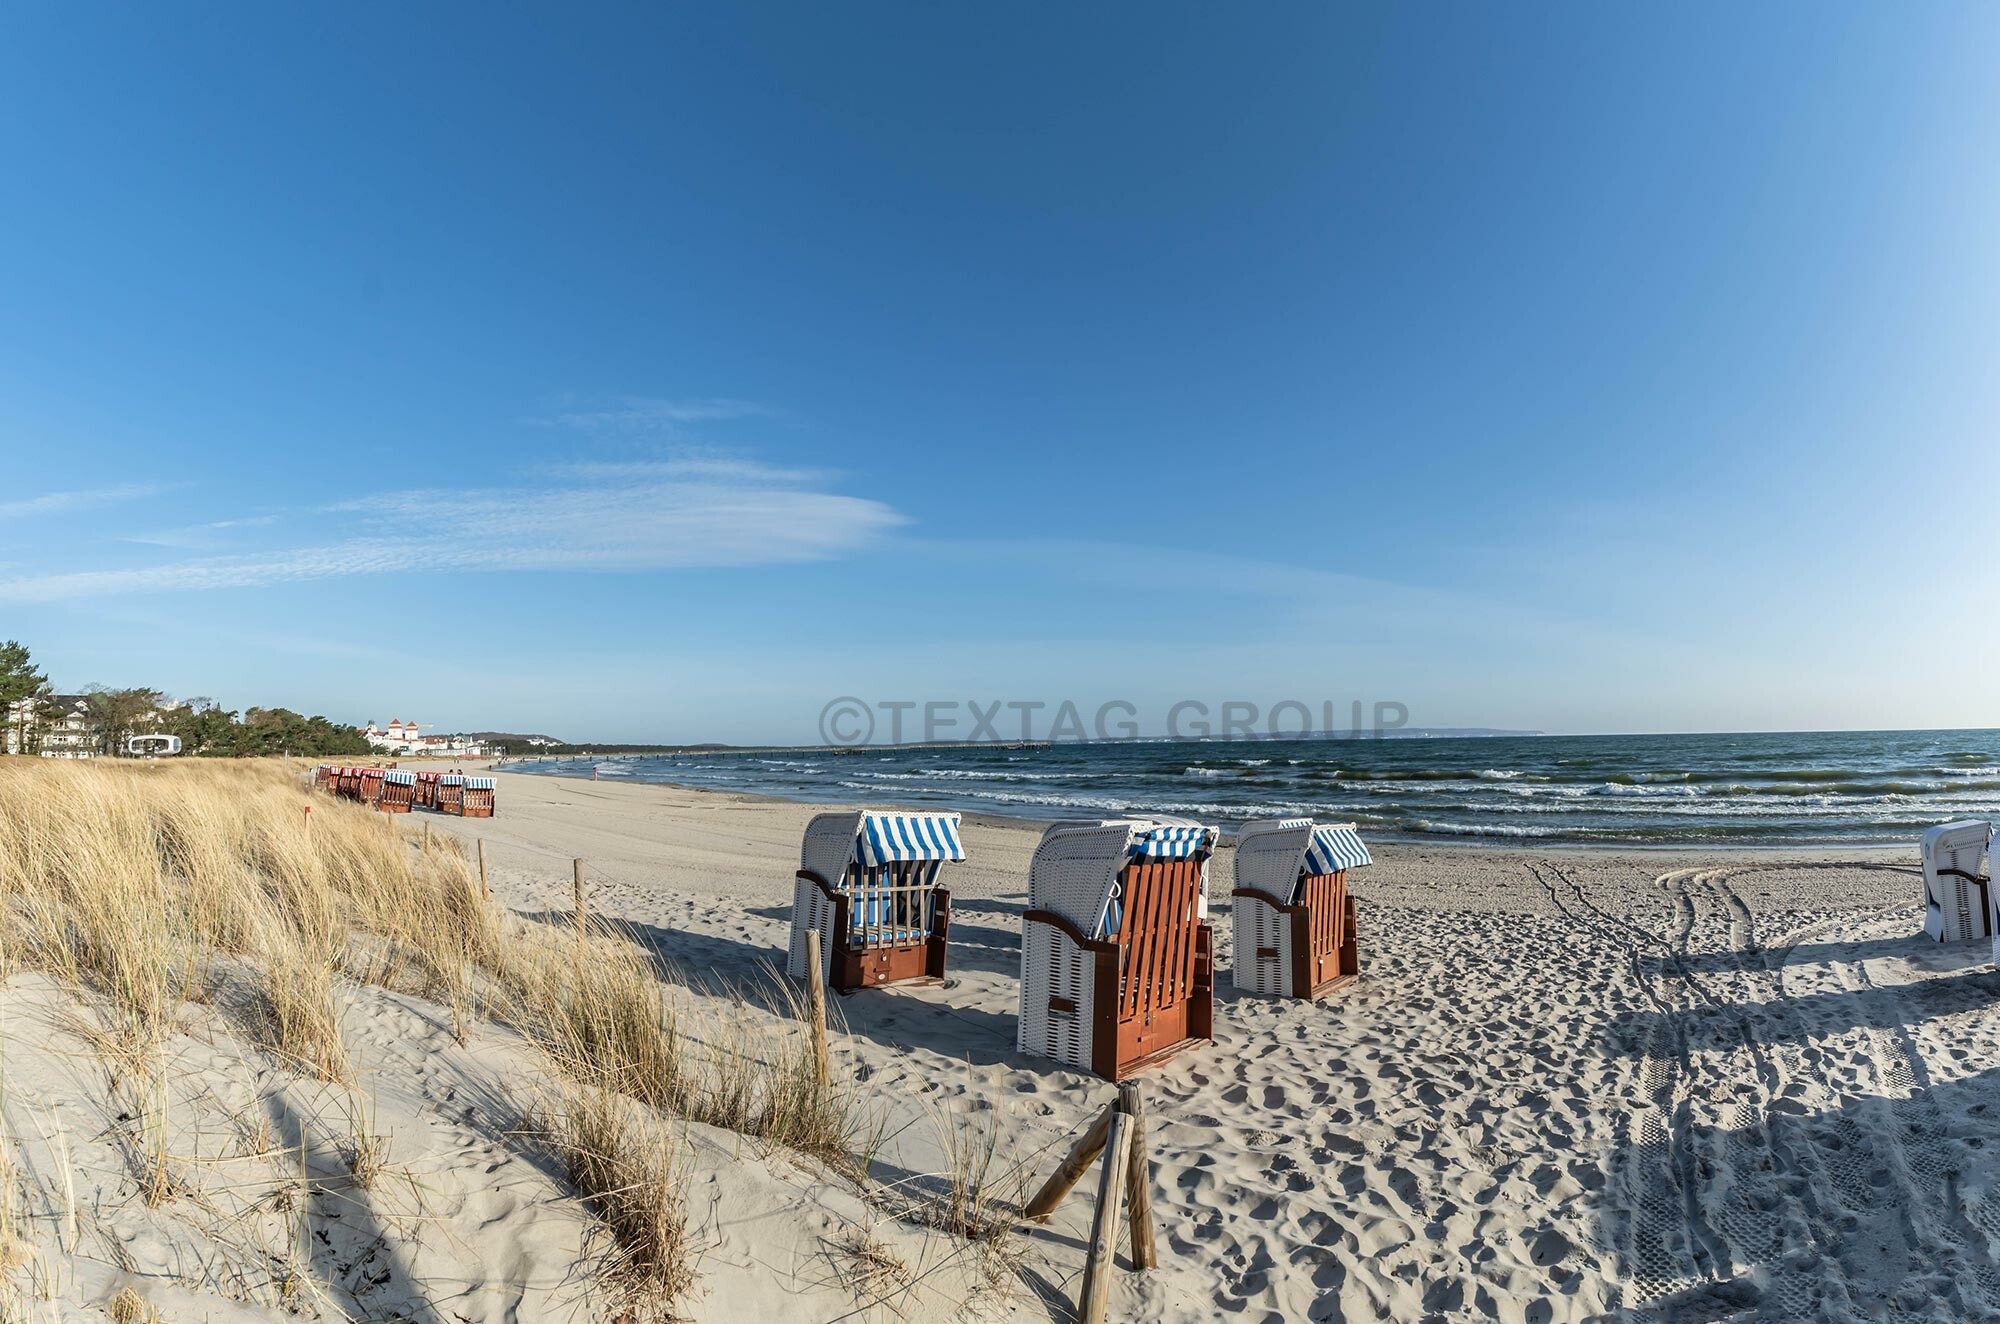 Foto Service Rügen - Von der Ostsee bis zur Nordsee fotografieren wir Ferienwohnungen, Immobilien, Hotels, Restaurants, Lebensmittel und Produkte